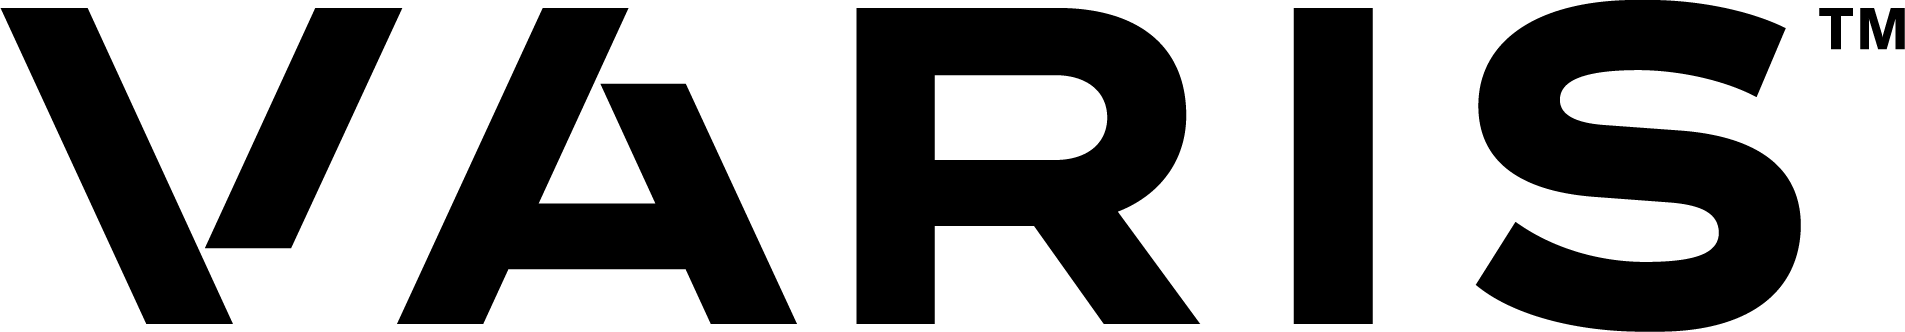 Varis Logo